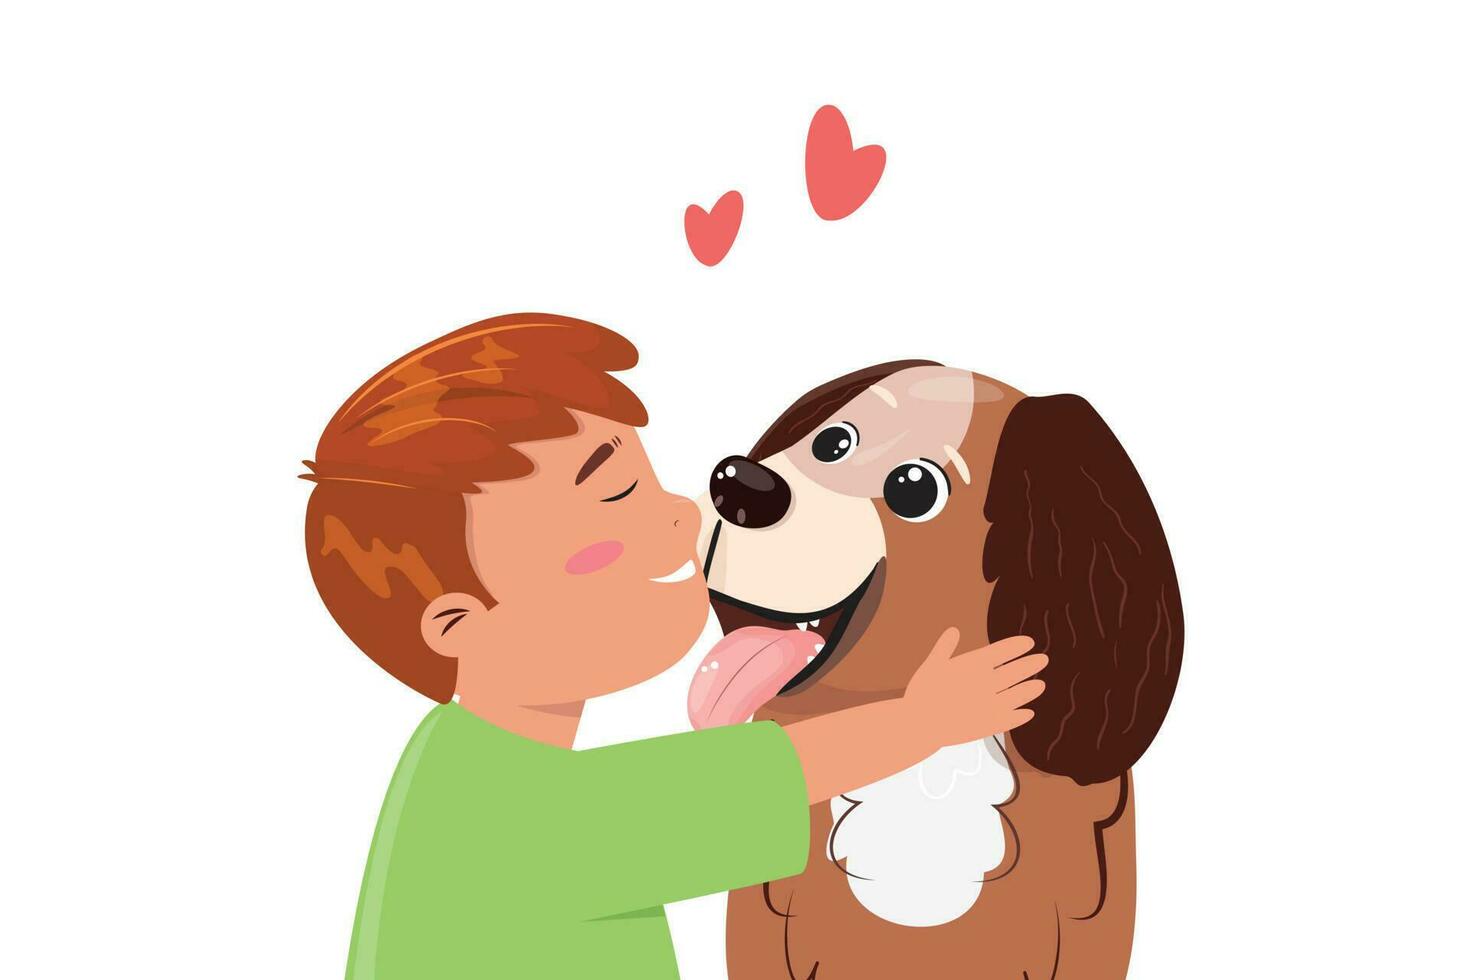 schattig tekenfilm illustratie met een jongen knuffelen zijn vriend hond. vriendschap, zorg, liefde tussen menselijk en huisdier concept illustratie. vector